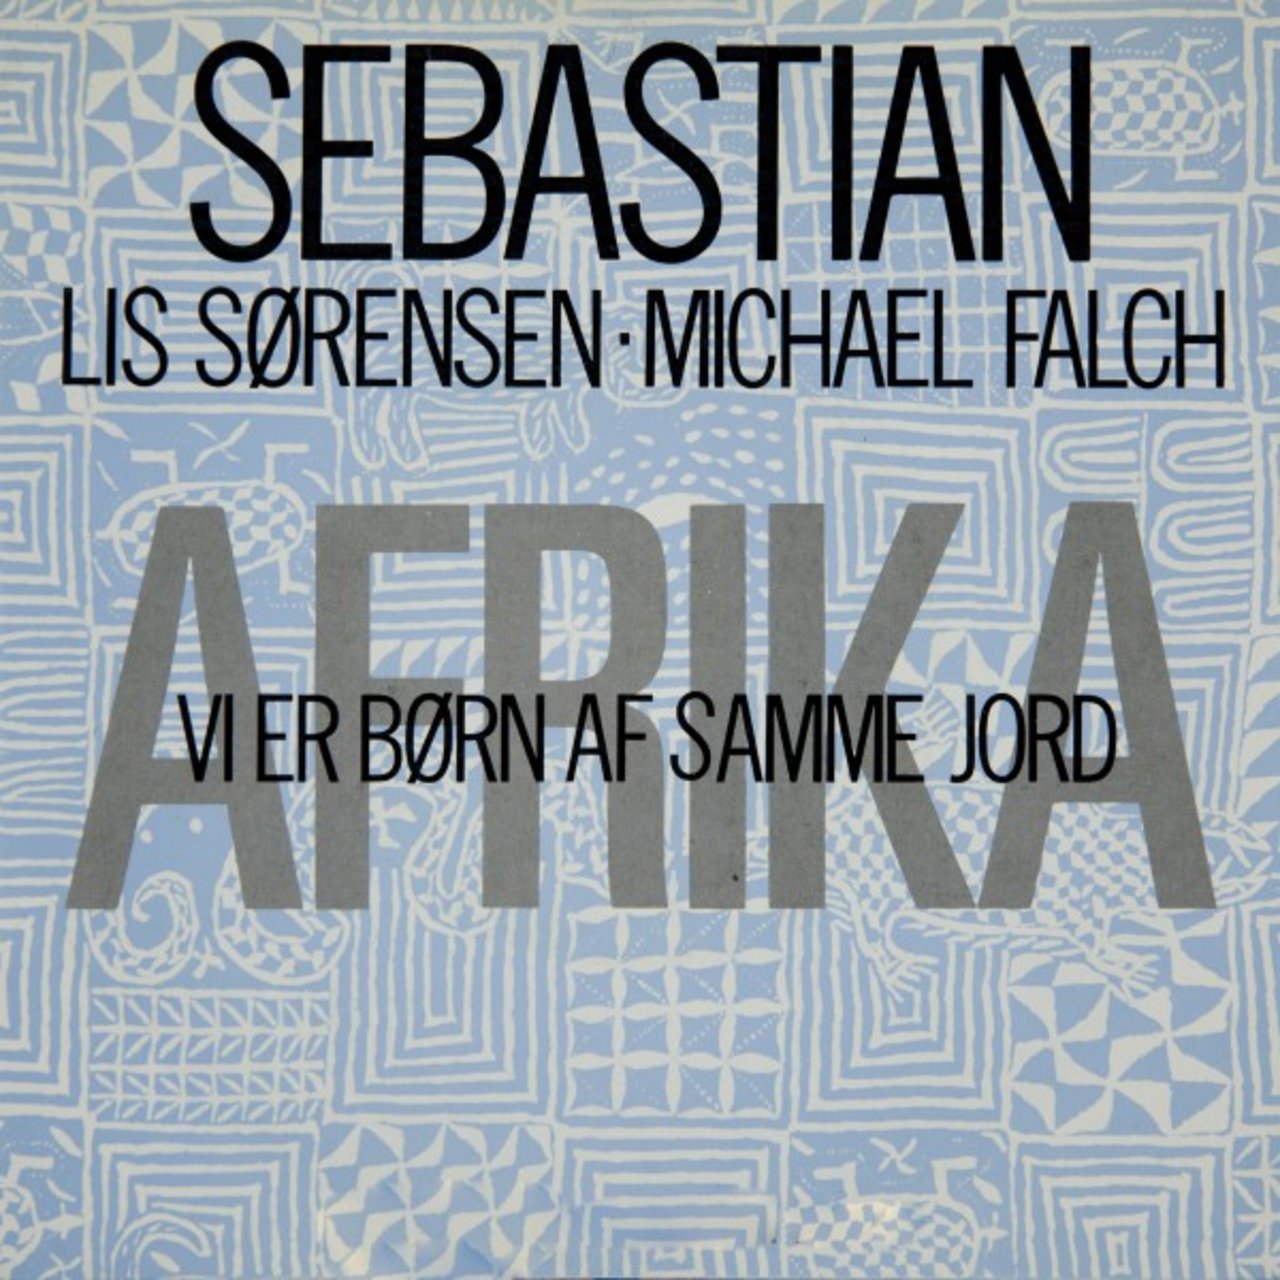 Sebastian (🇩🇰) featuring Lis Sørensen & Michael Falch — Afrika (Vi er børn af samme jord) cover artwork